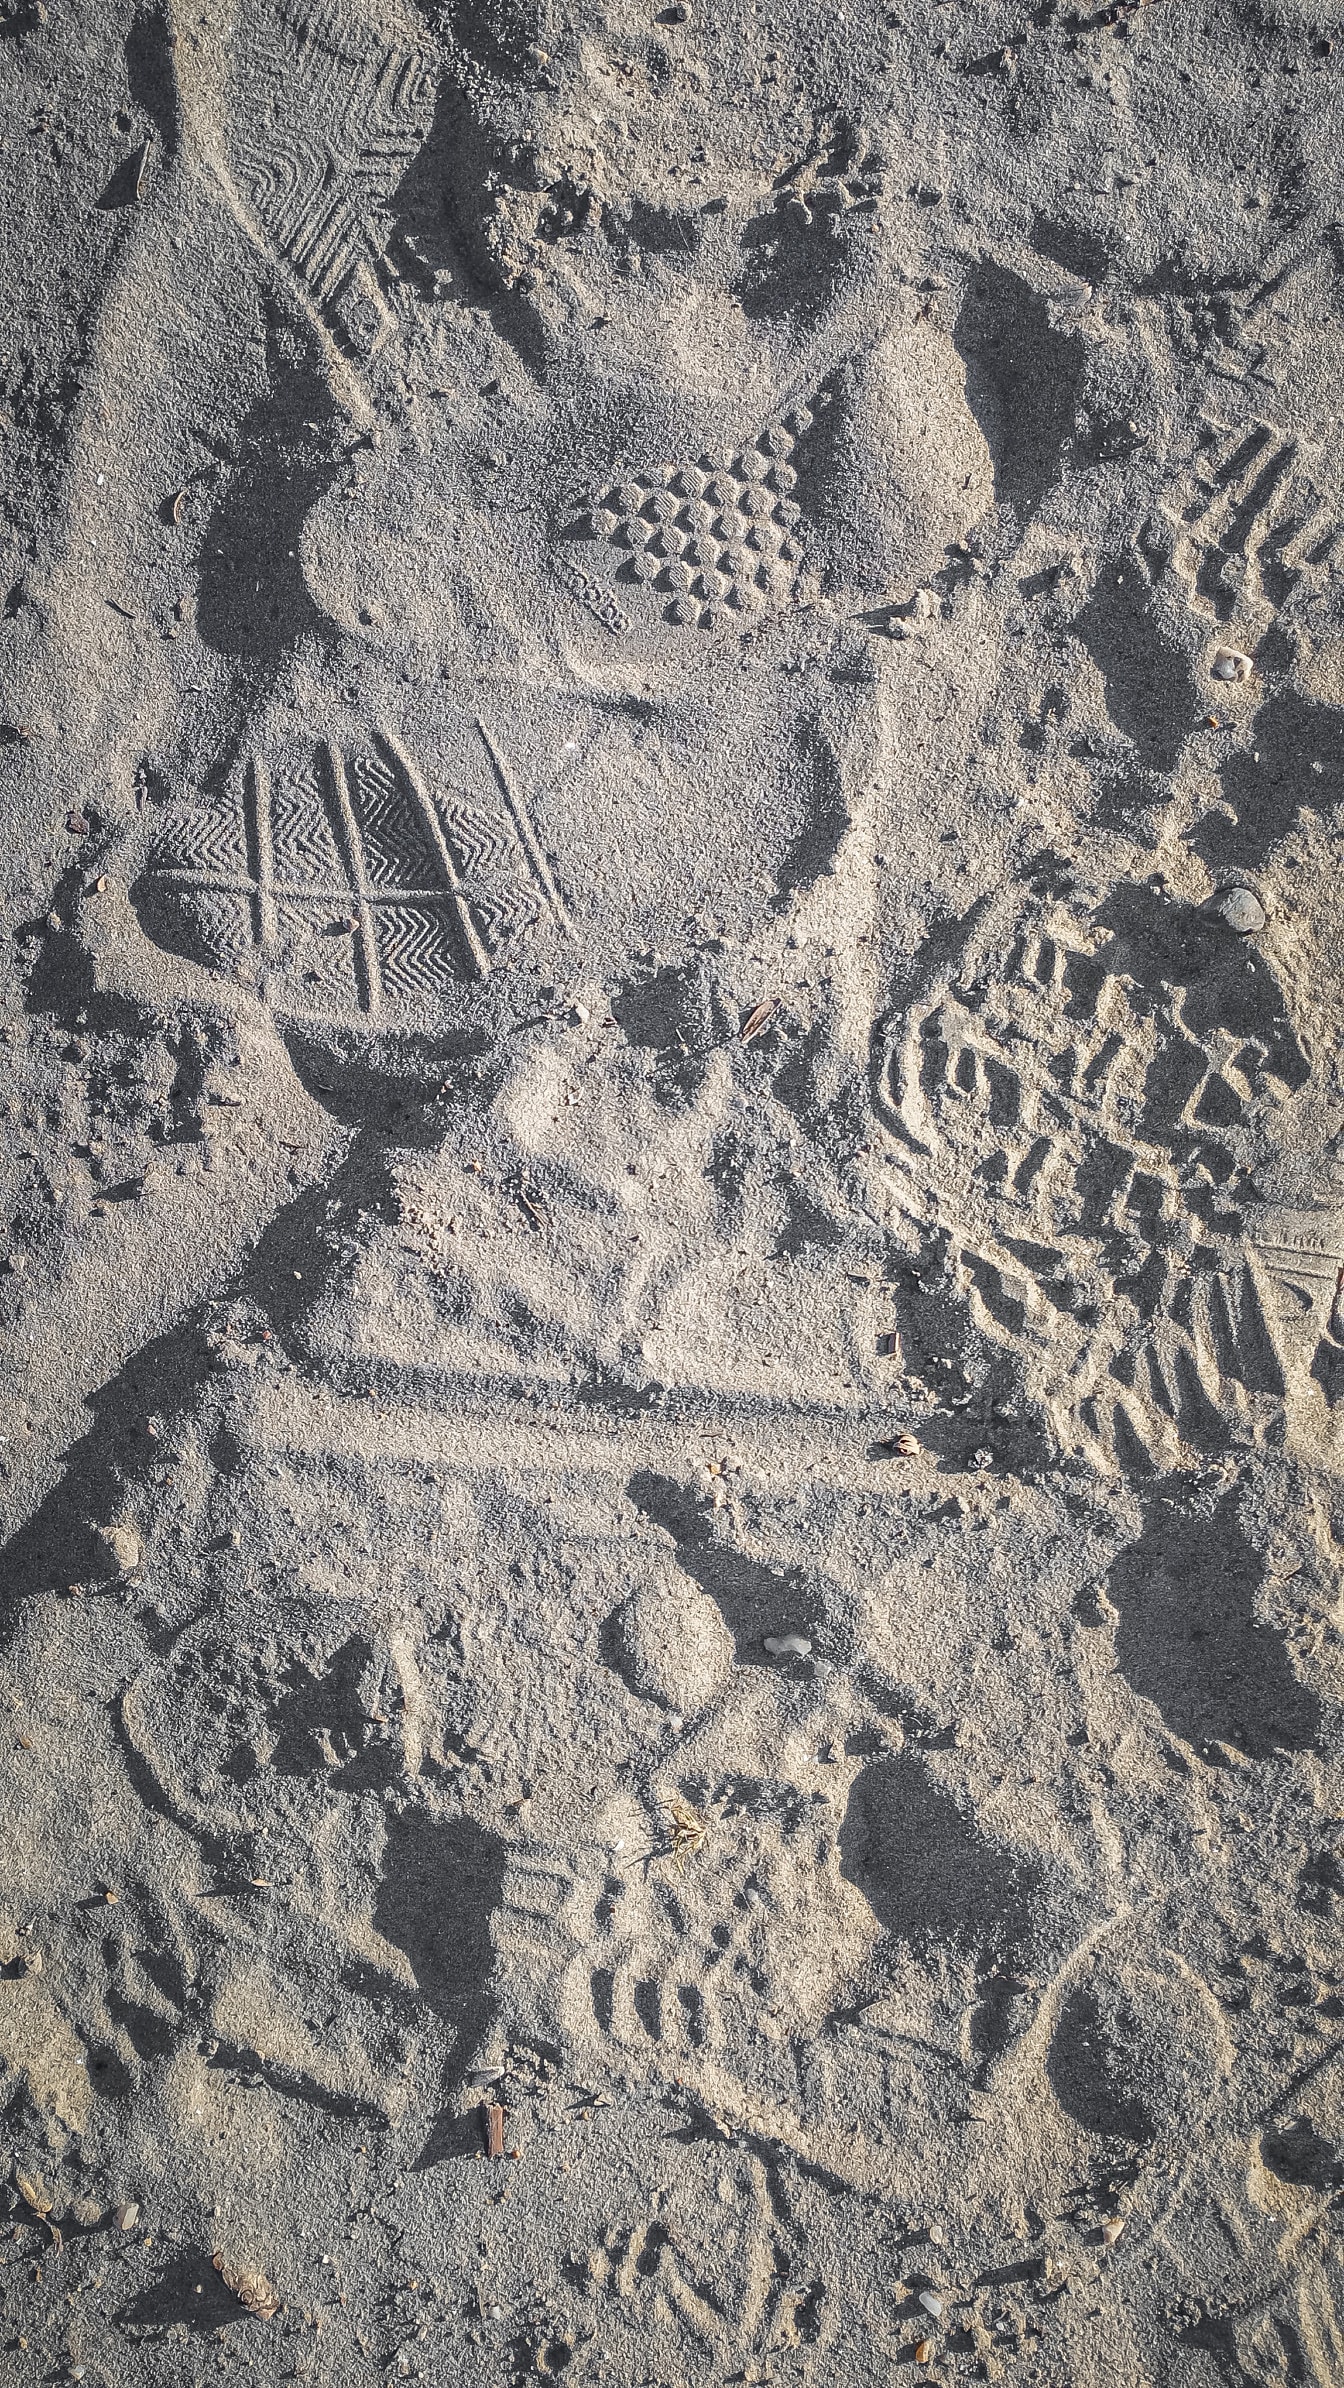 Textura rugosa de la arena con huellas en la superficie